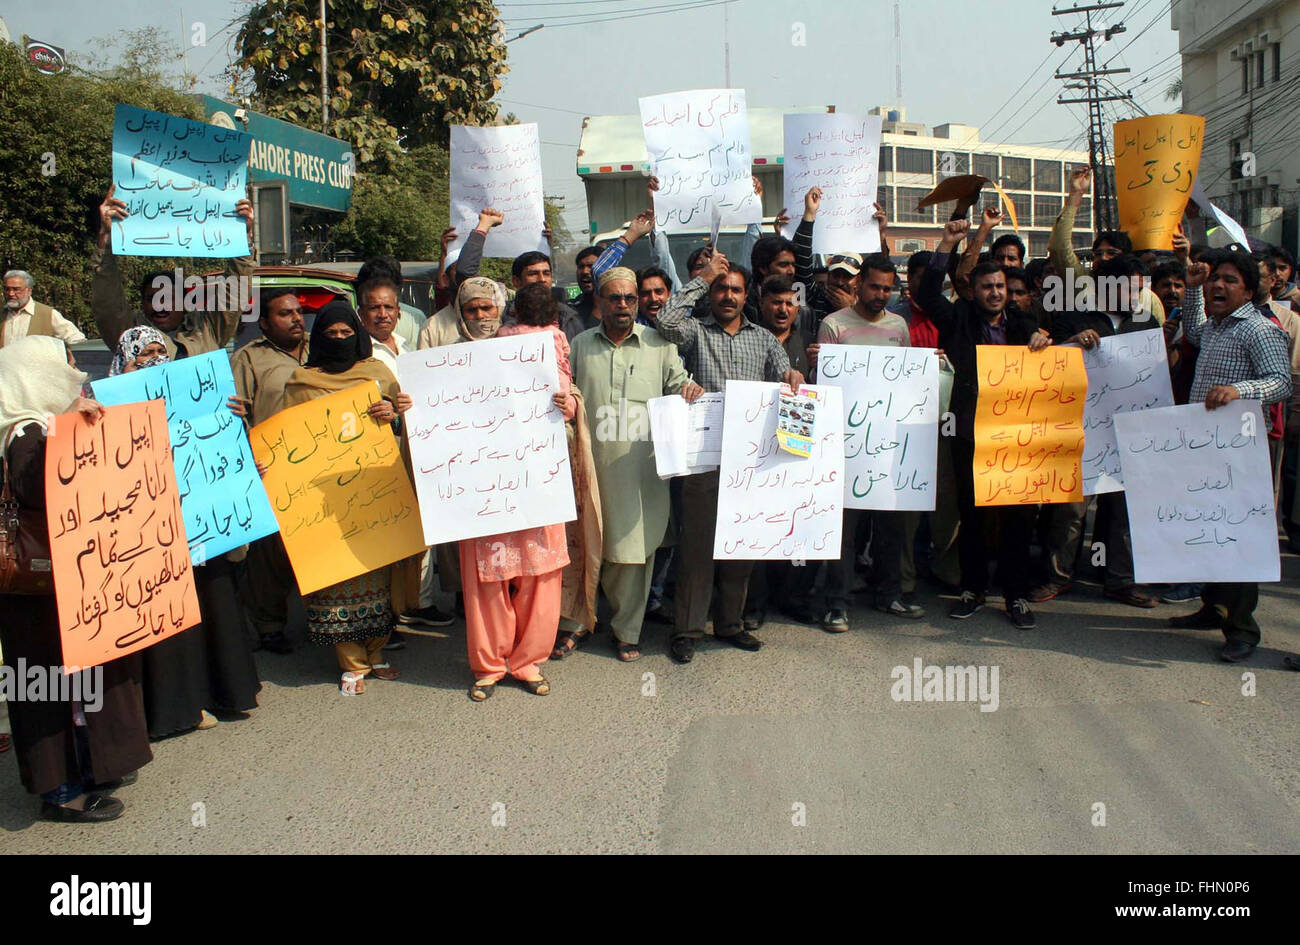 I residenti di Lahore protestano contro le frodi finanziarie in auto e ciclo motore finanziatrice, durante la manifestazione svoltasi a Lahore press club il giovedì, 25 febbraio 2016. Foto Stock